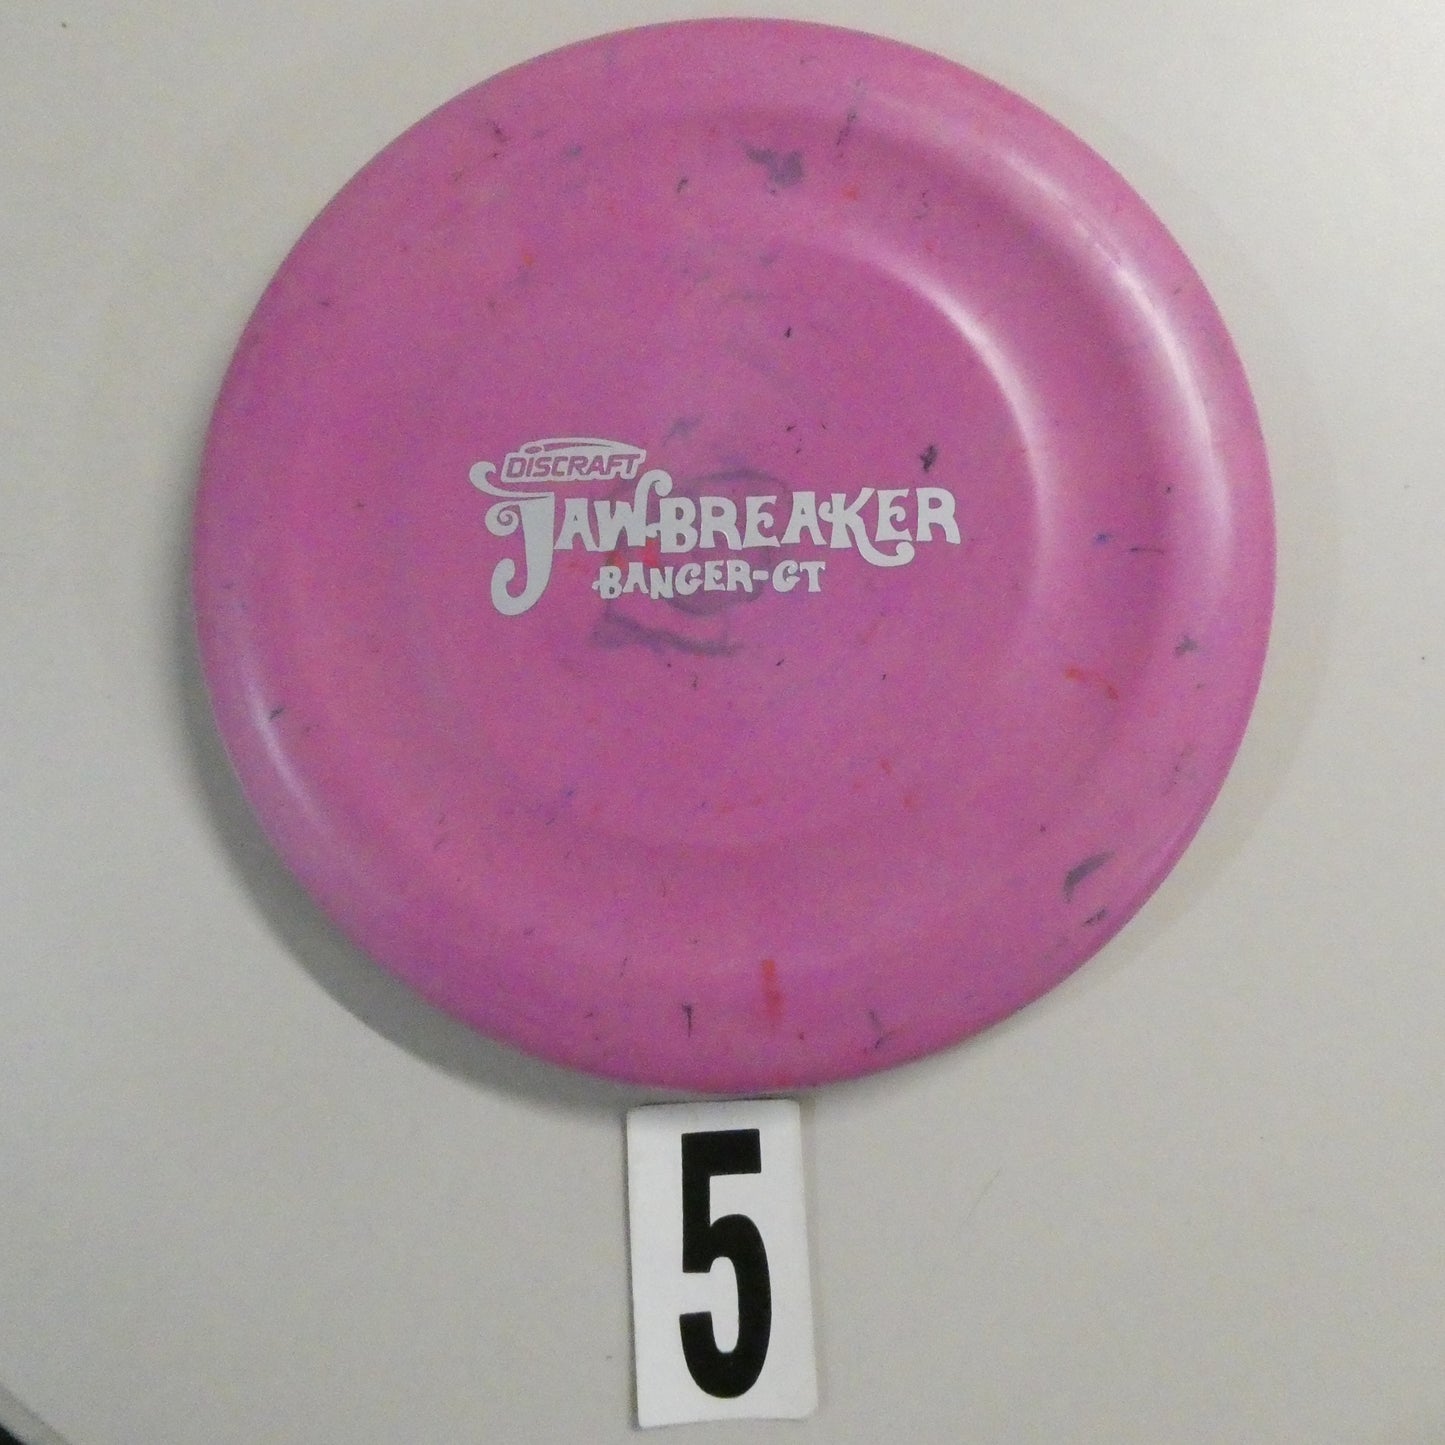 Jawbreaker Banger GT